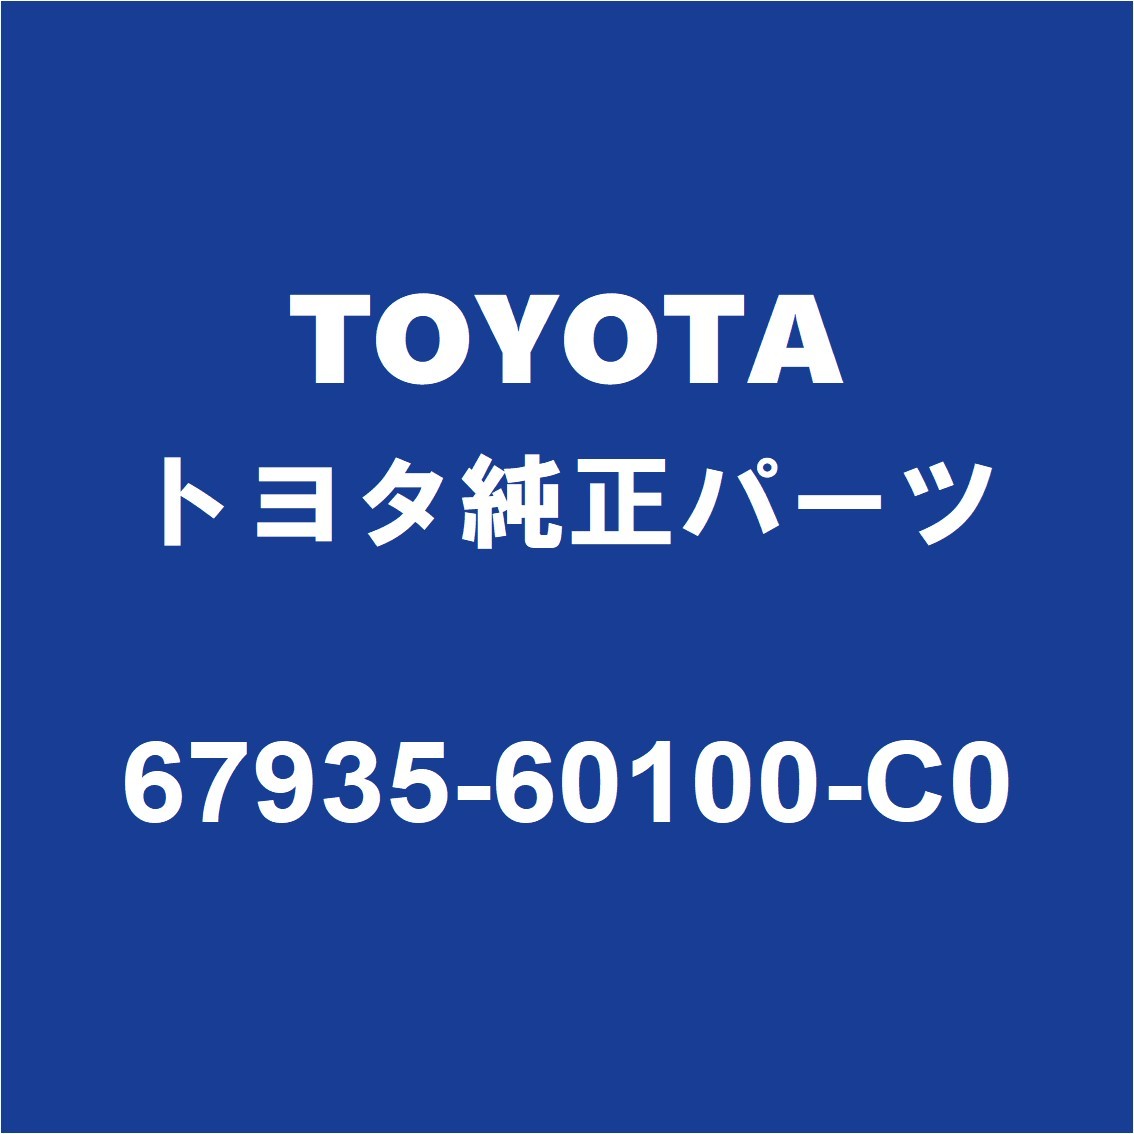 TOYOTAトヨタ純正 ランドクルーザー バックドアトリムボード 67935-60100-C0_画像1